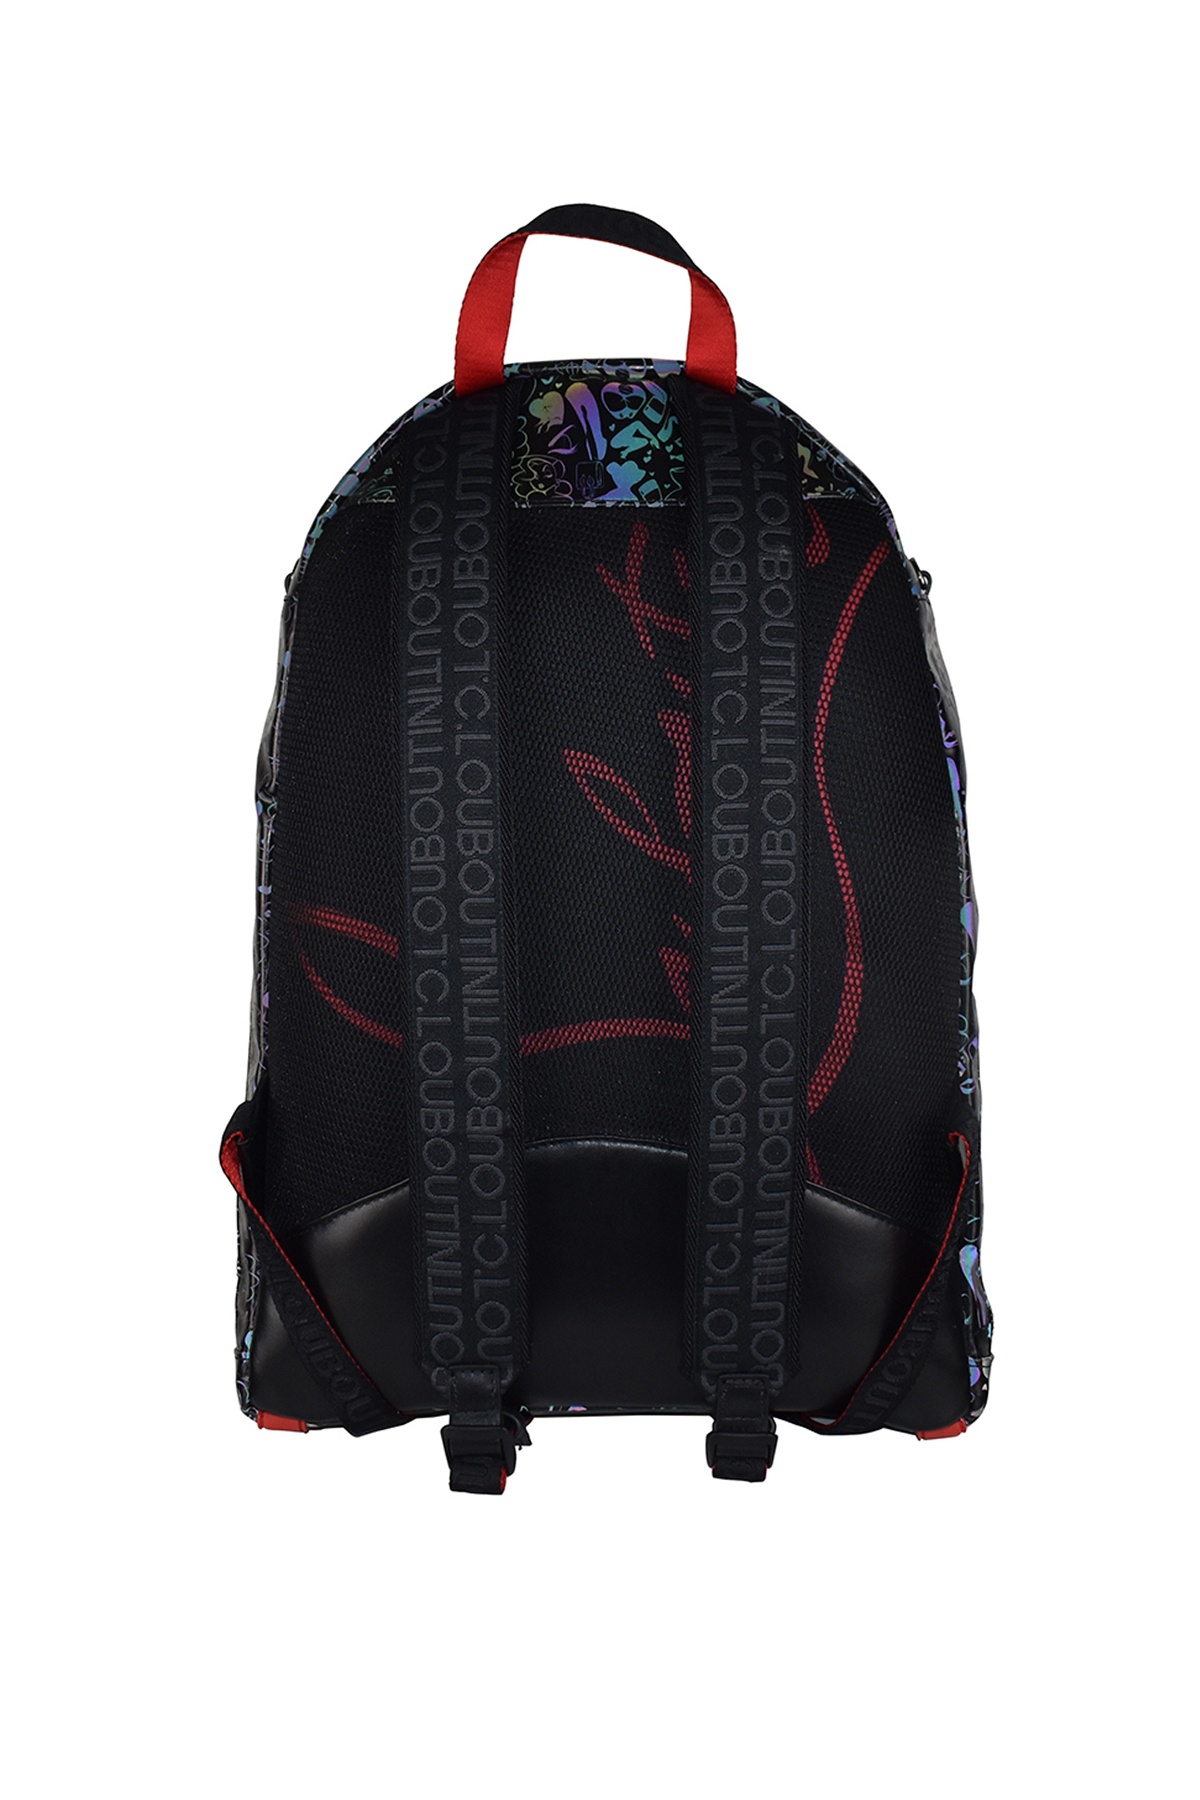 Backparis Backpack - 4